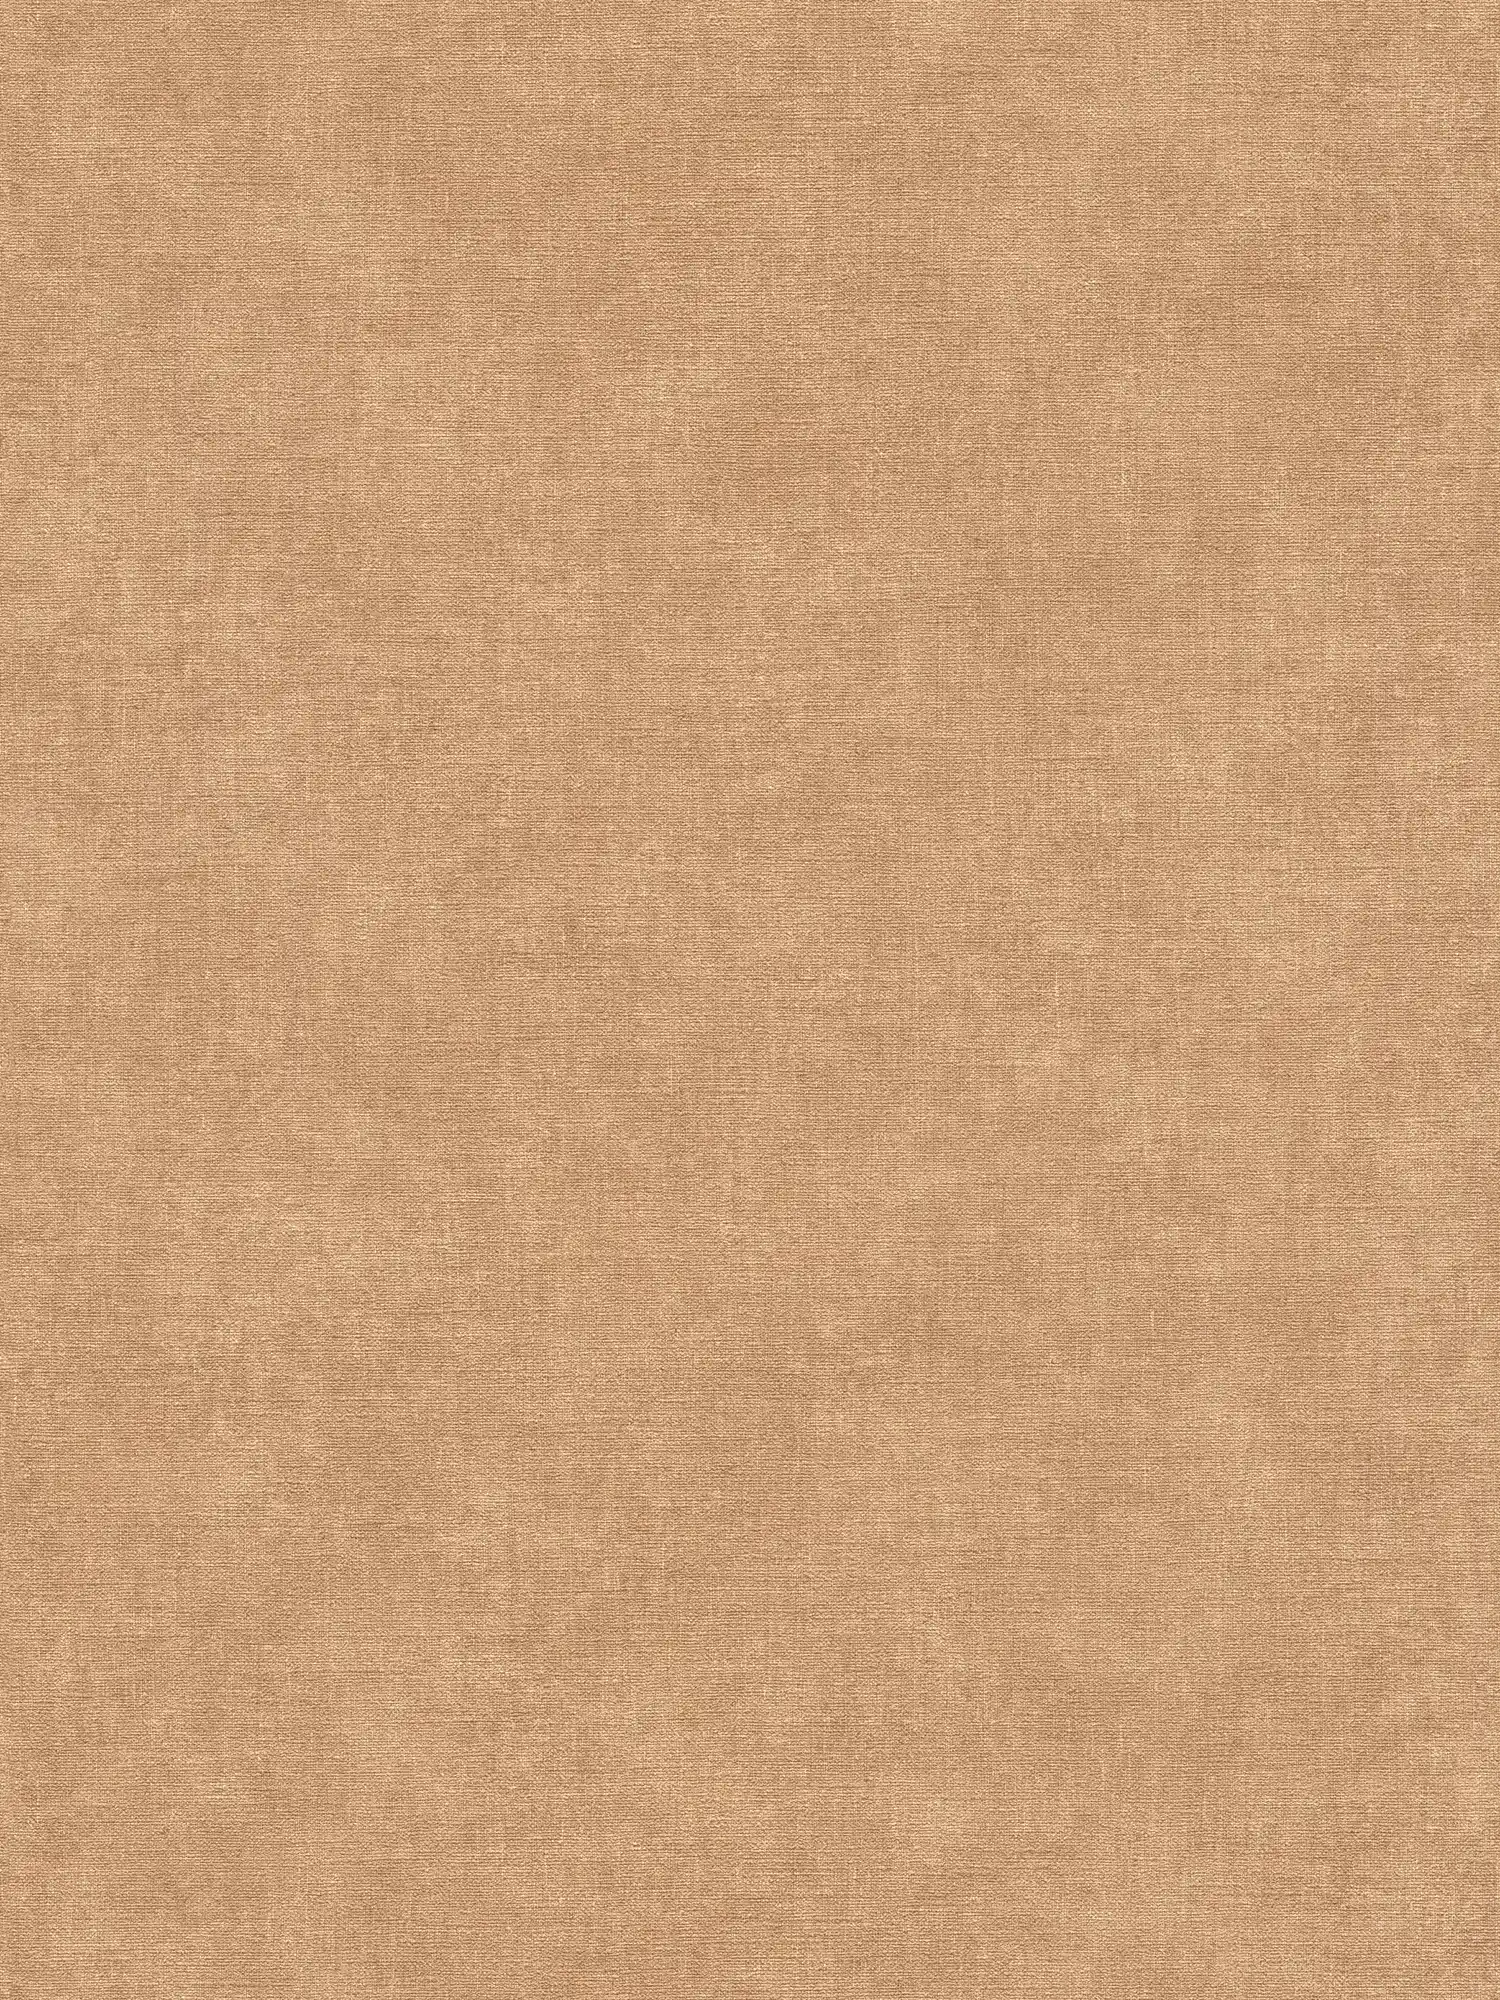 papier peint en papier uni avec légère structure aspect textile - marron, beige
